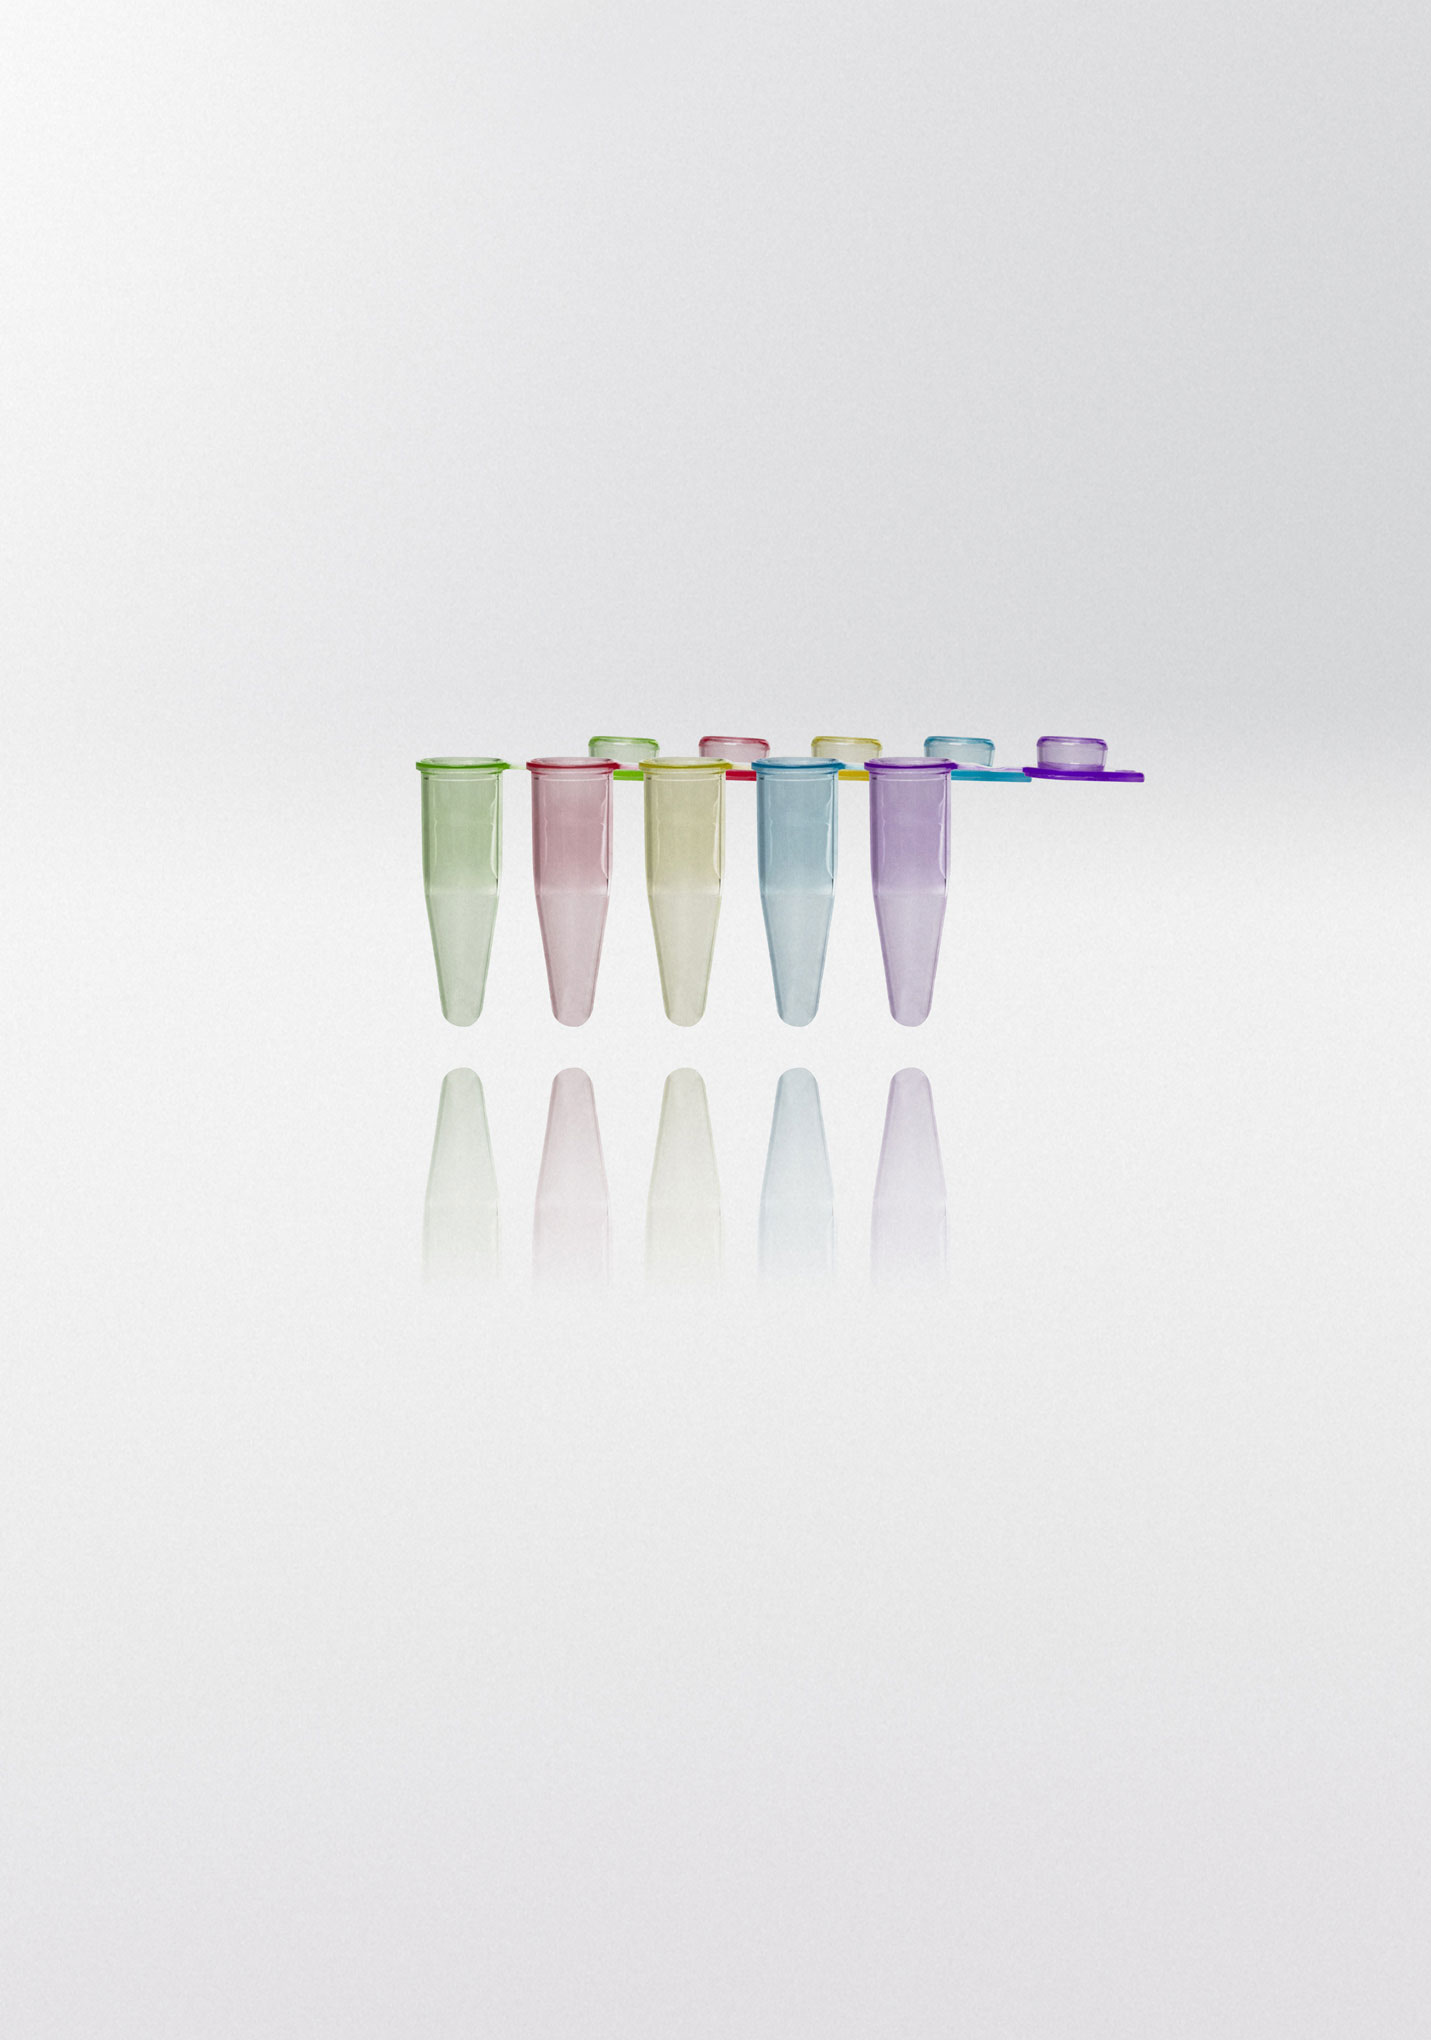 Tubos para PCR. NERBE-PLUS. Capacidad (ml): 0,2. Resist. centrif. (g): 20000. Tapón: Plano y mate. Color tubo/tapón: Surtido de colores: verde, rojo, amarillo, azul y violeta. Esterilidad: PCR Ready.